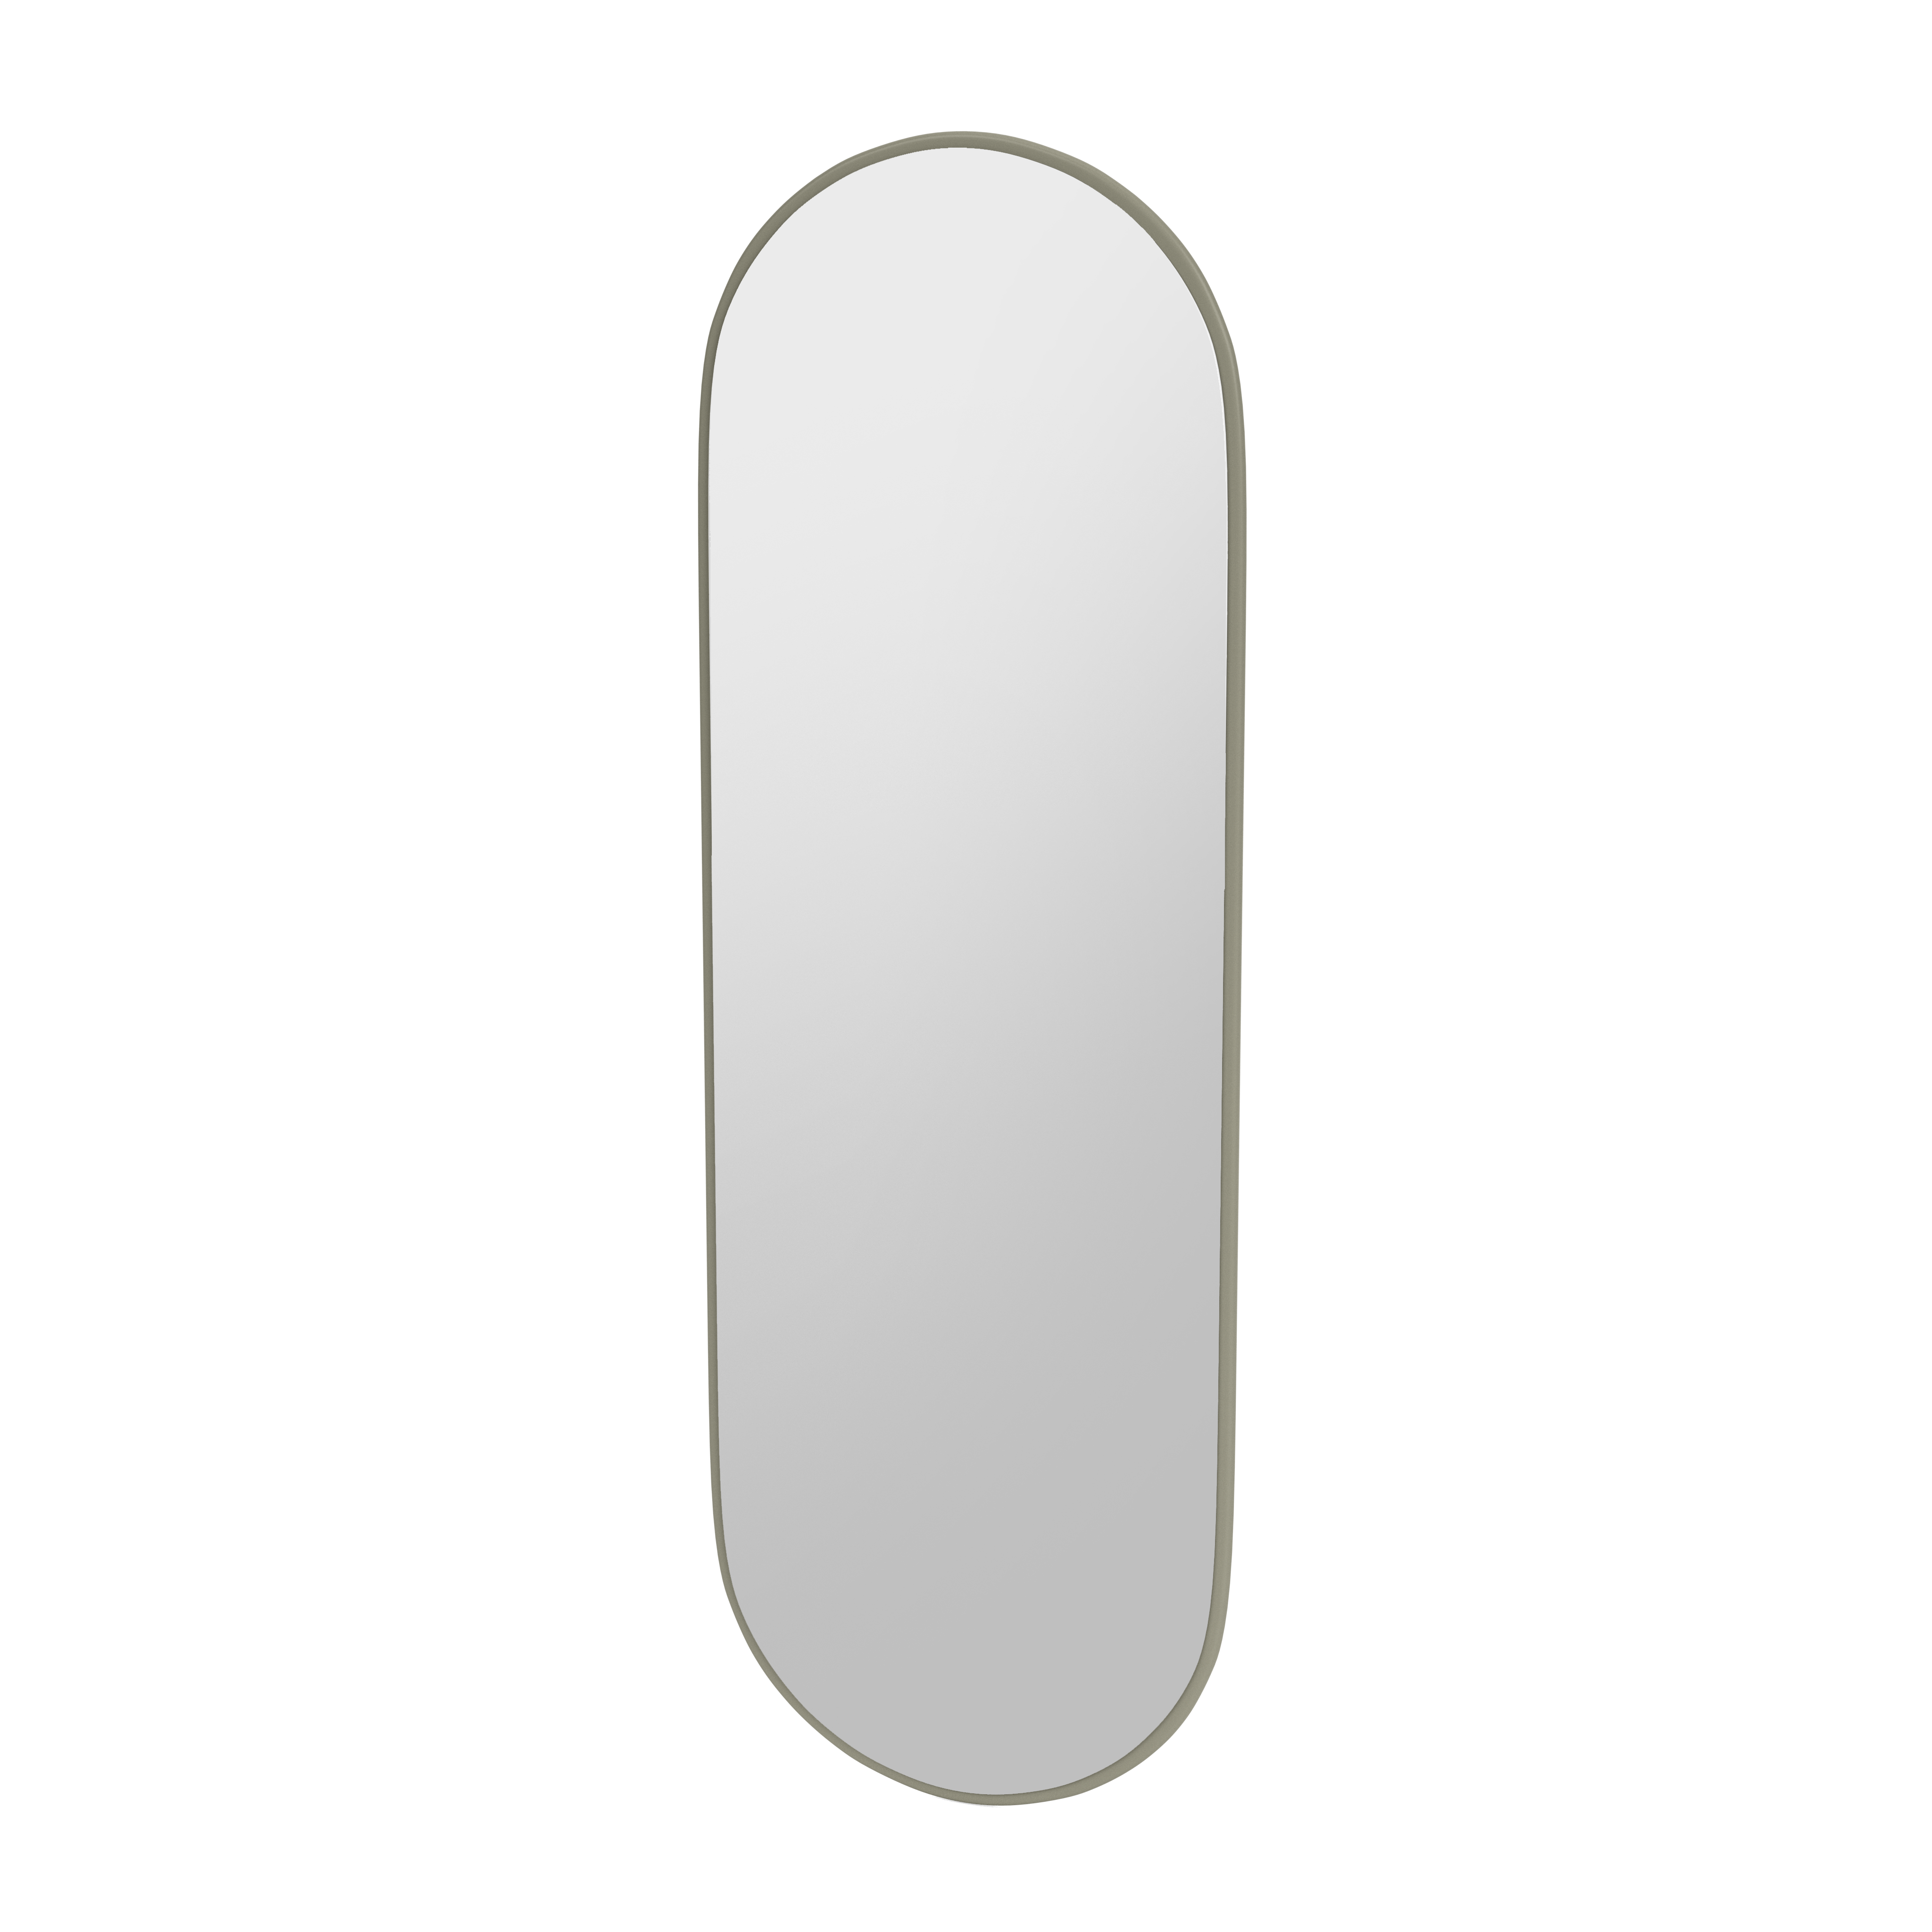 Montana FIGURE ovalt spejl